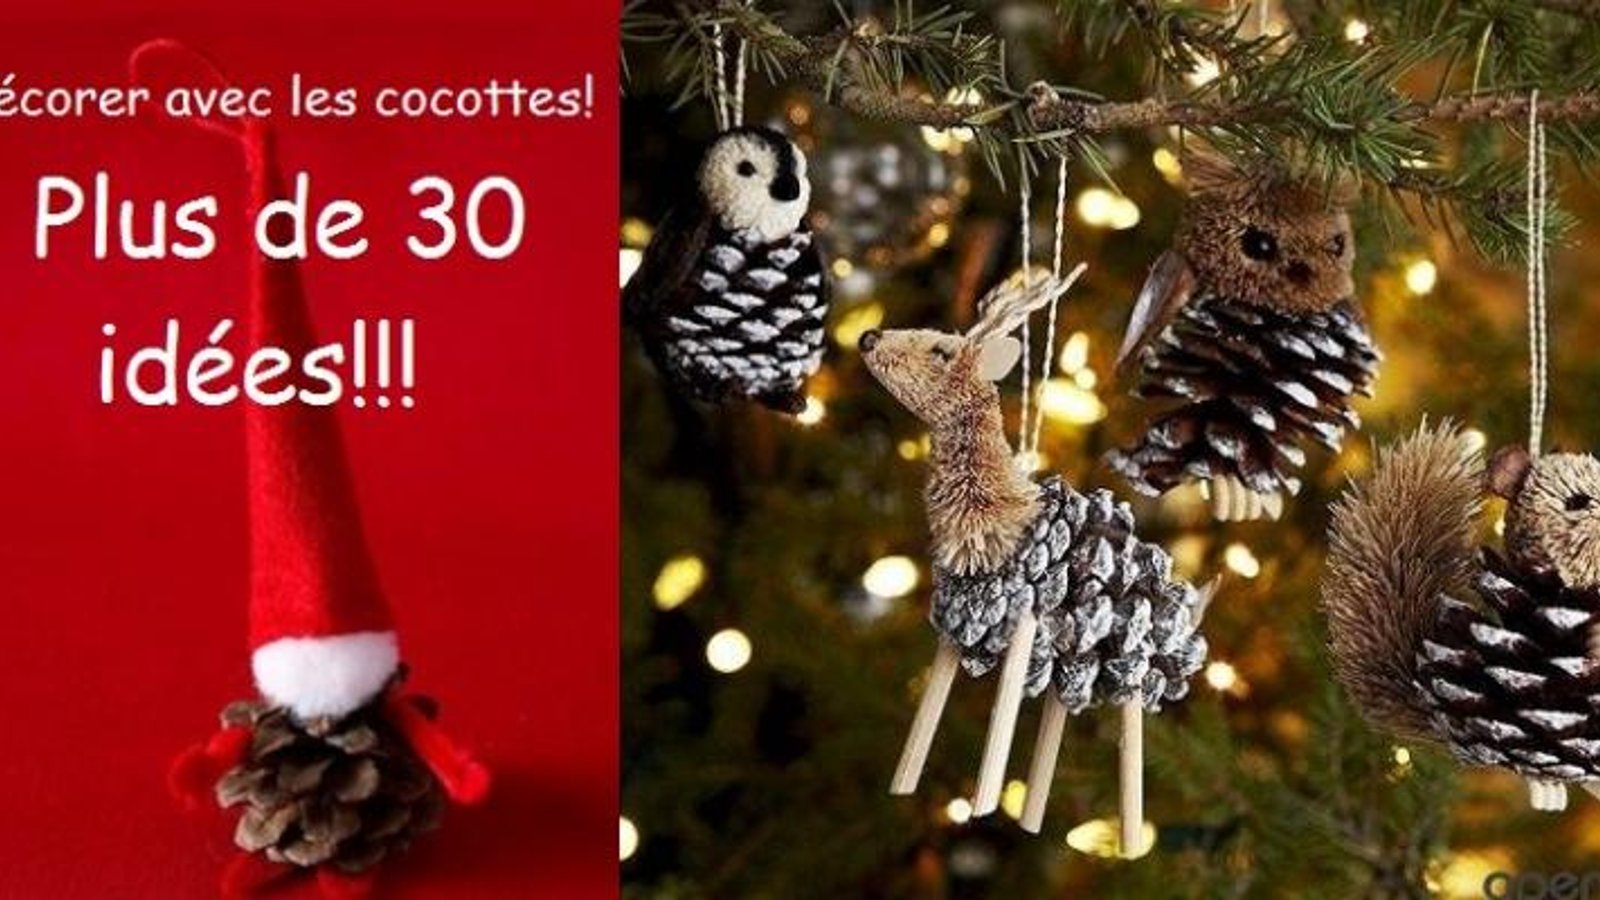 Plus de 30 idées de décoration de Noël à faire avec des cocottes de pins! 